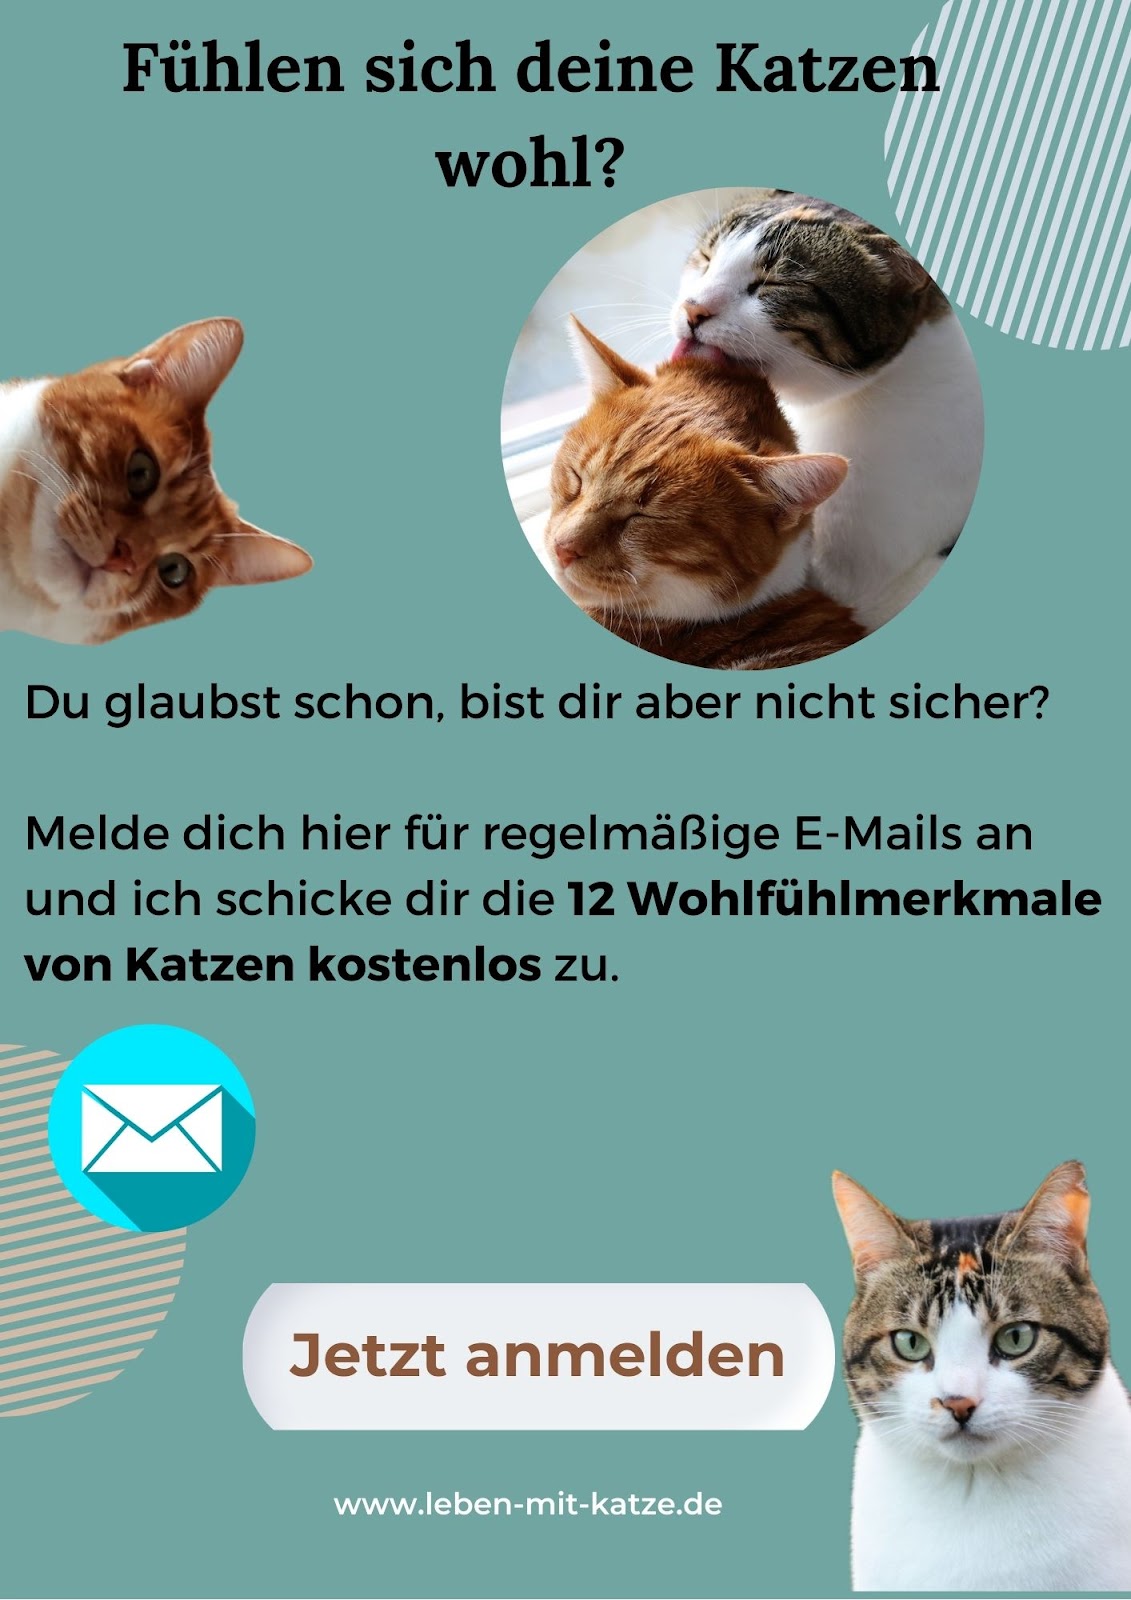 Leben mit Katze Newsletter